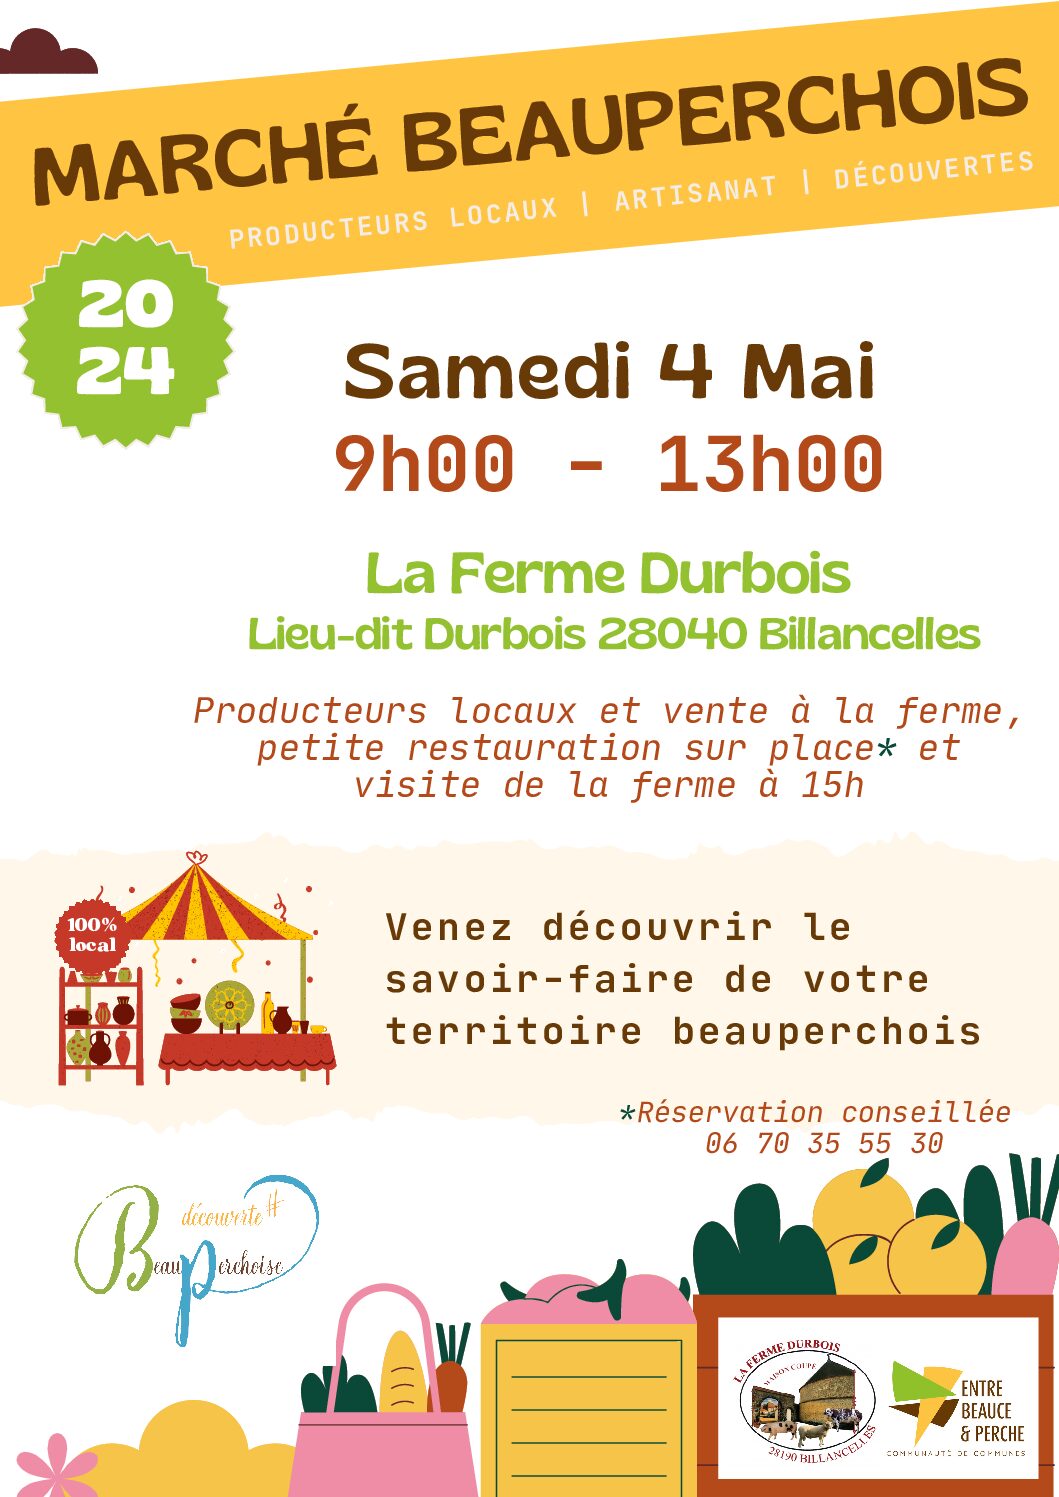 Marché Beauperchois 4 mai